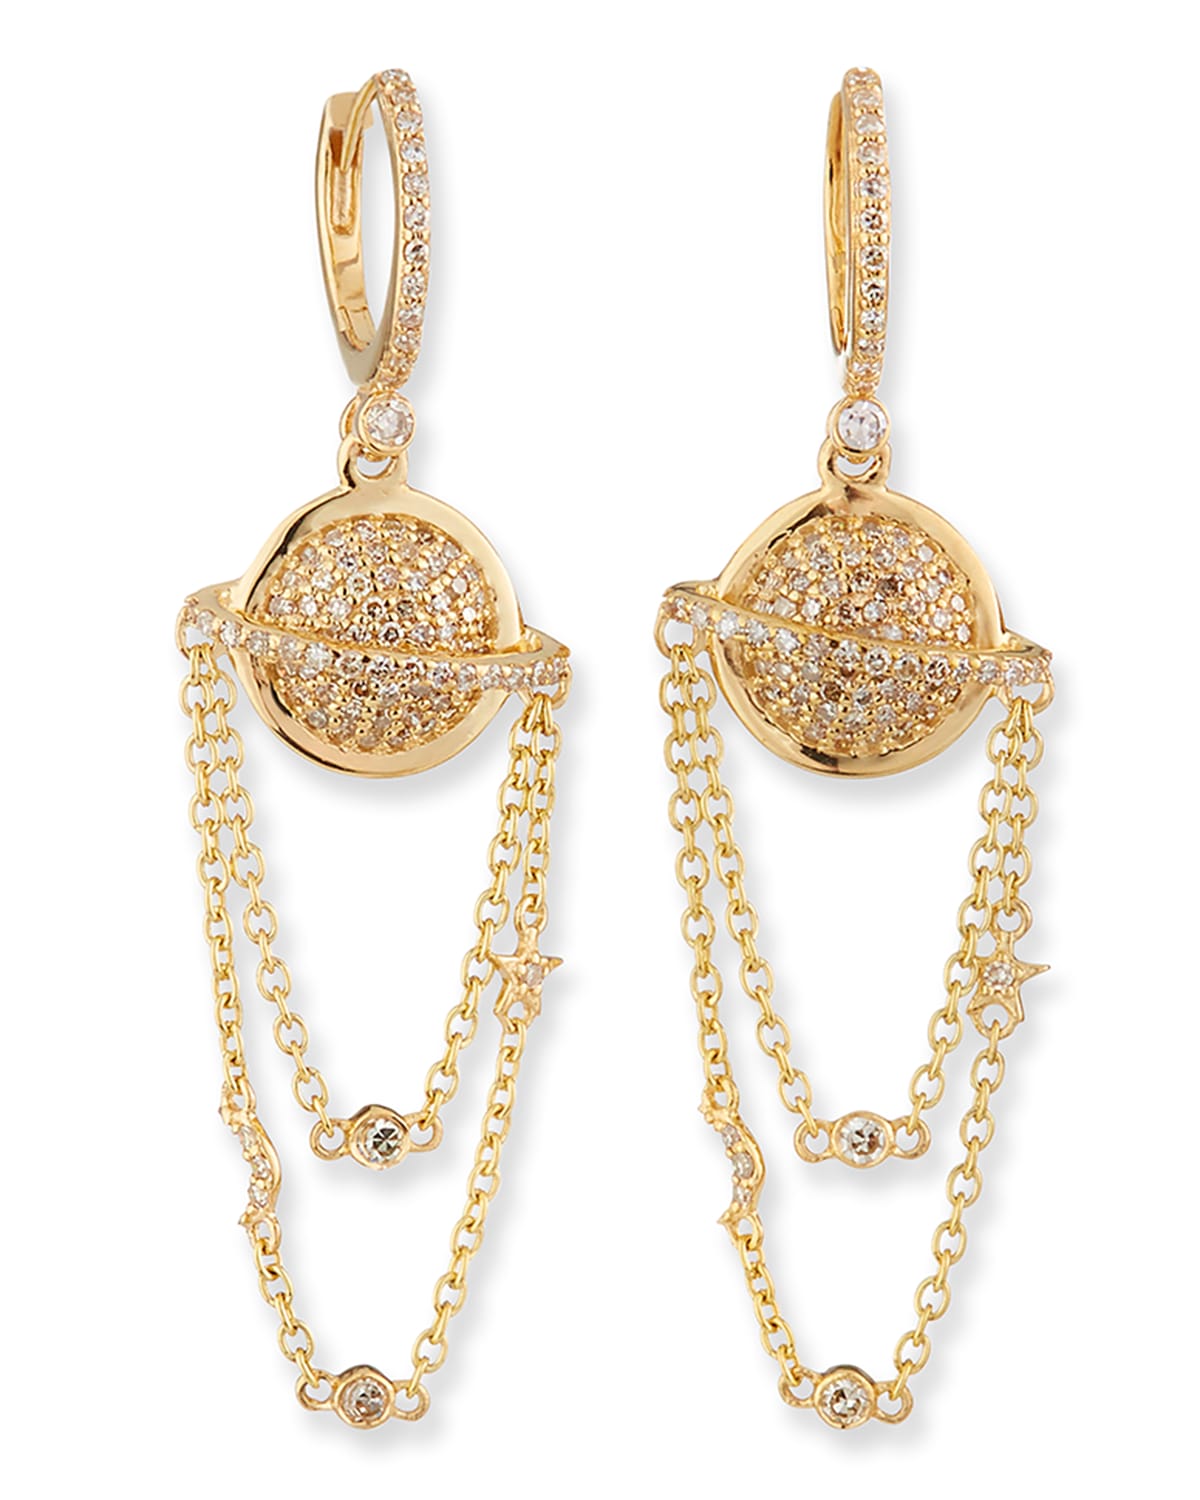 Kastel Jewelry Cosmos Planet 14k Chain Earrings